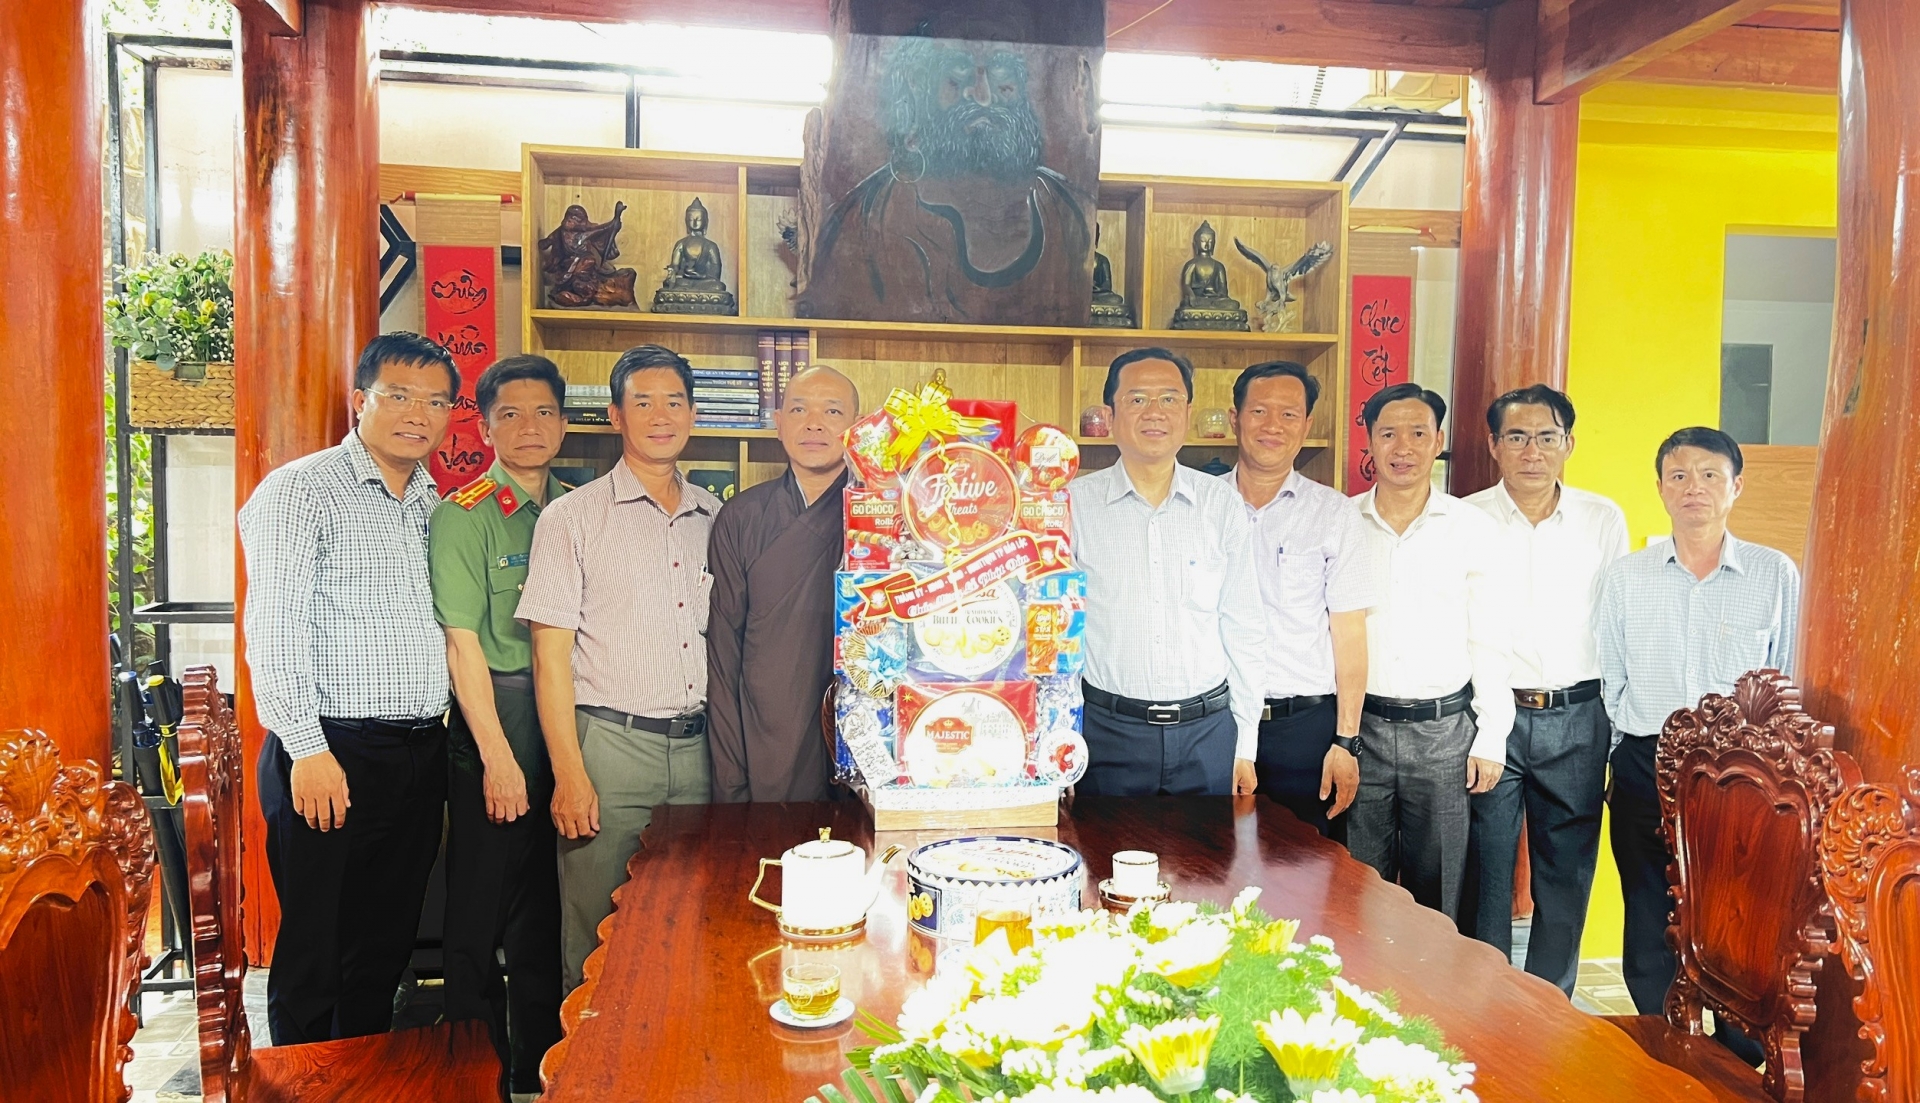 Đồng chí Tôn Thiện Đồng - Bí thư Thành ủy Bảo Lộc đến thăm, tặng quà, chúc mừng Tu viện An Lạc nhân dịp lễ Phật đản